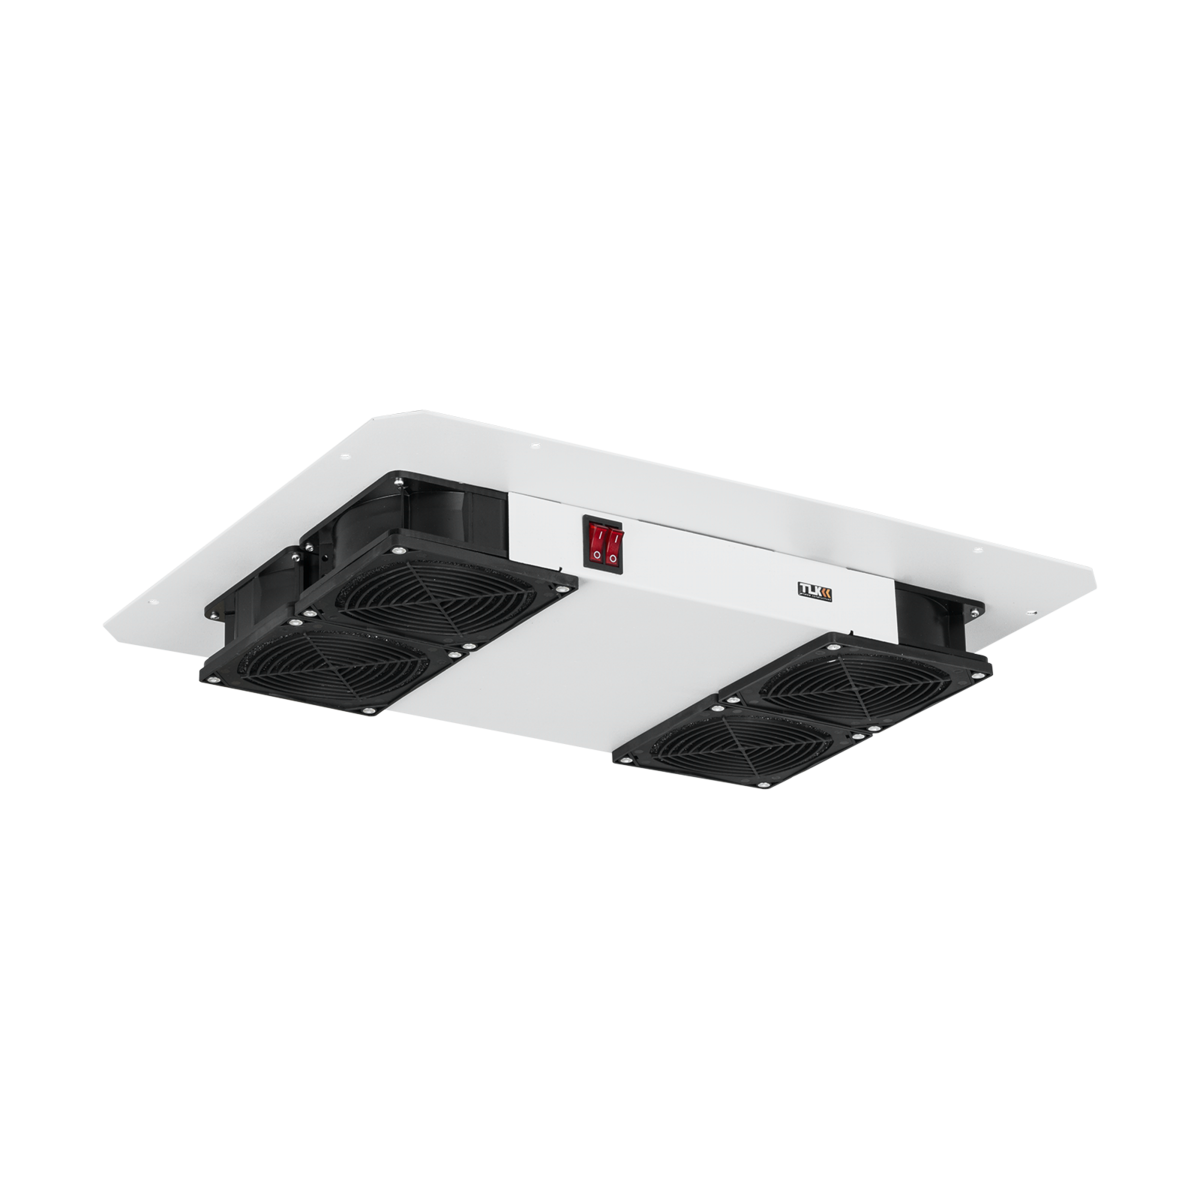 Вентиляторный блок TLK для напольных шкафов серий TFR, TFL, TFA, 4 вентилятора, нижние решетки пластиковые с фильтром, без шнура питания, серый